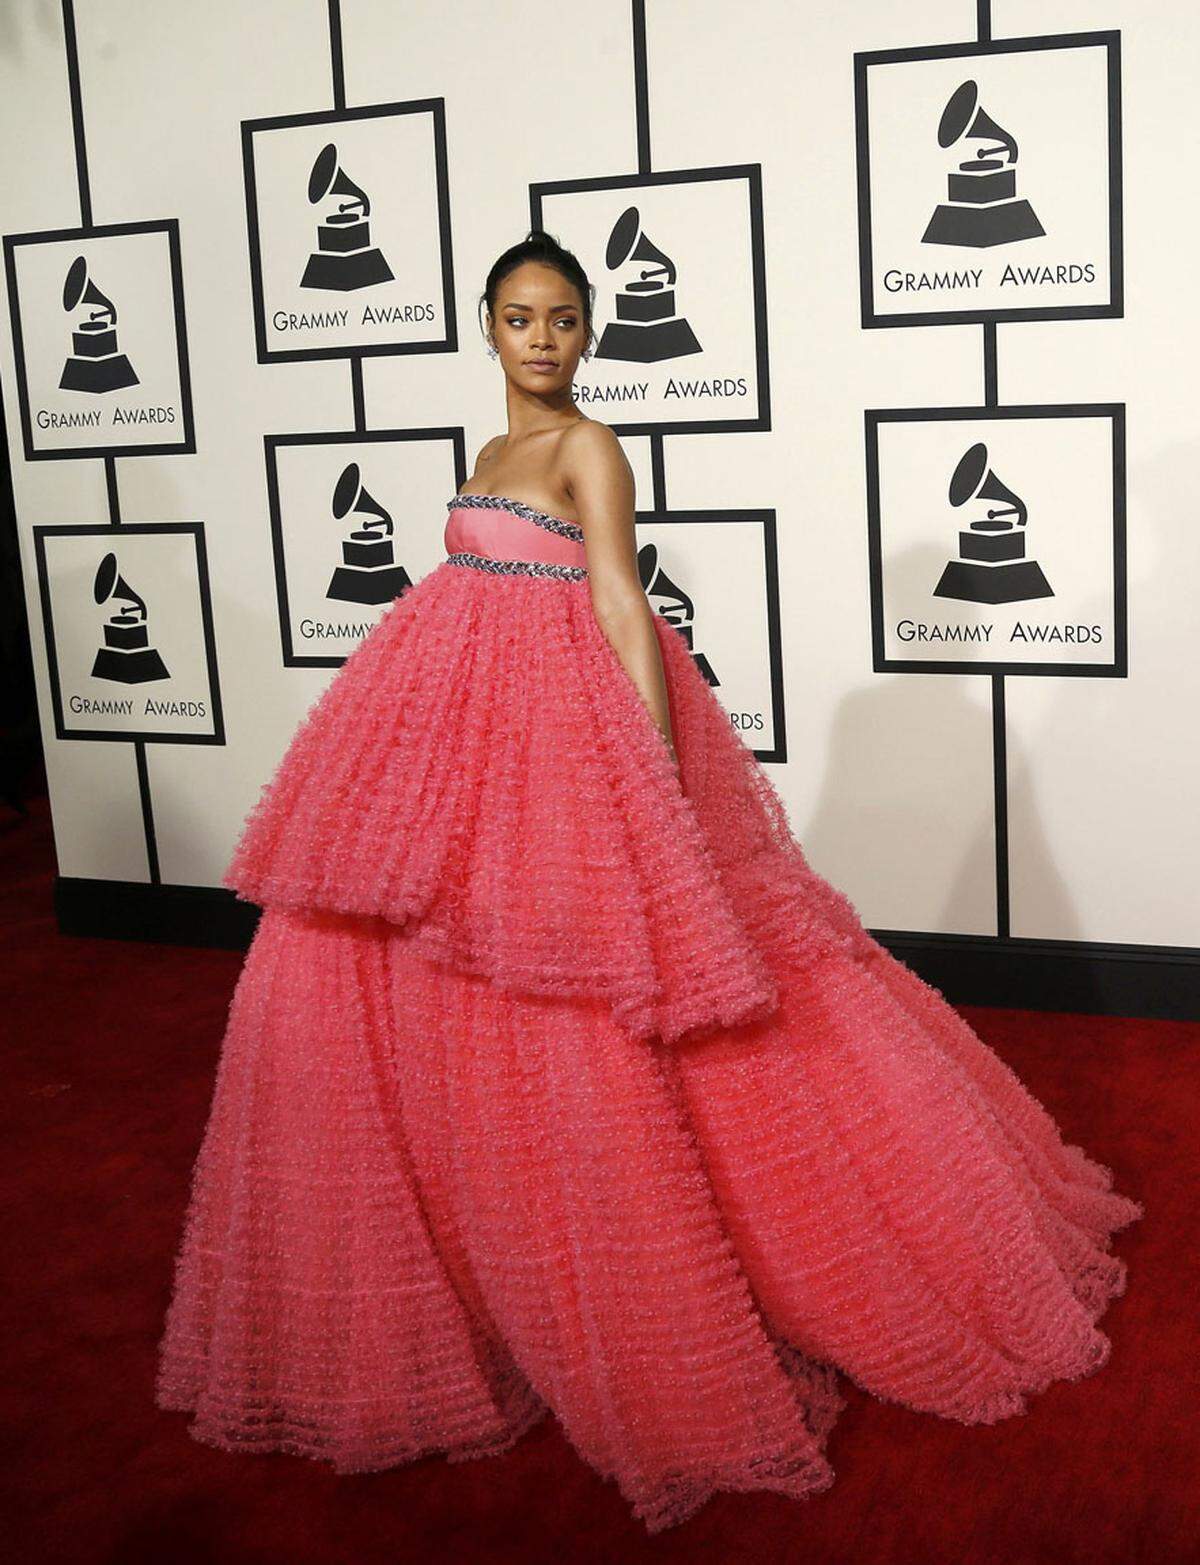 Auch Modeikone Rihanna, die mit ihren Outfits immer für Furore sorgt, fing einmal klein an.